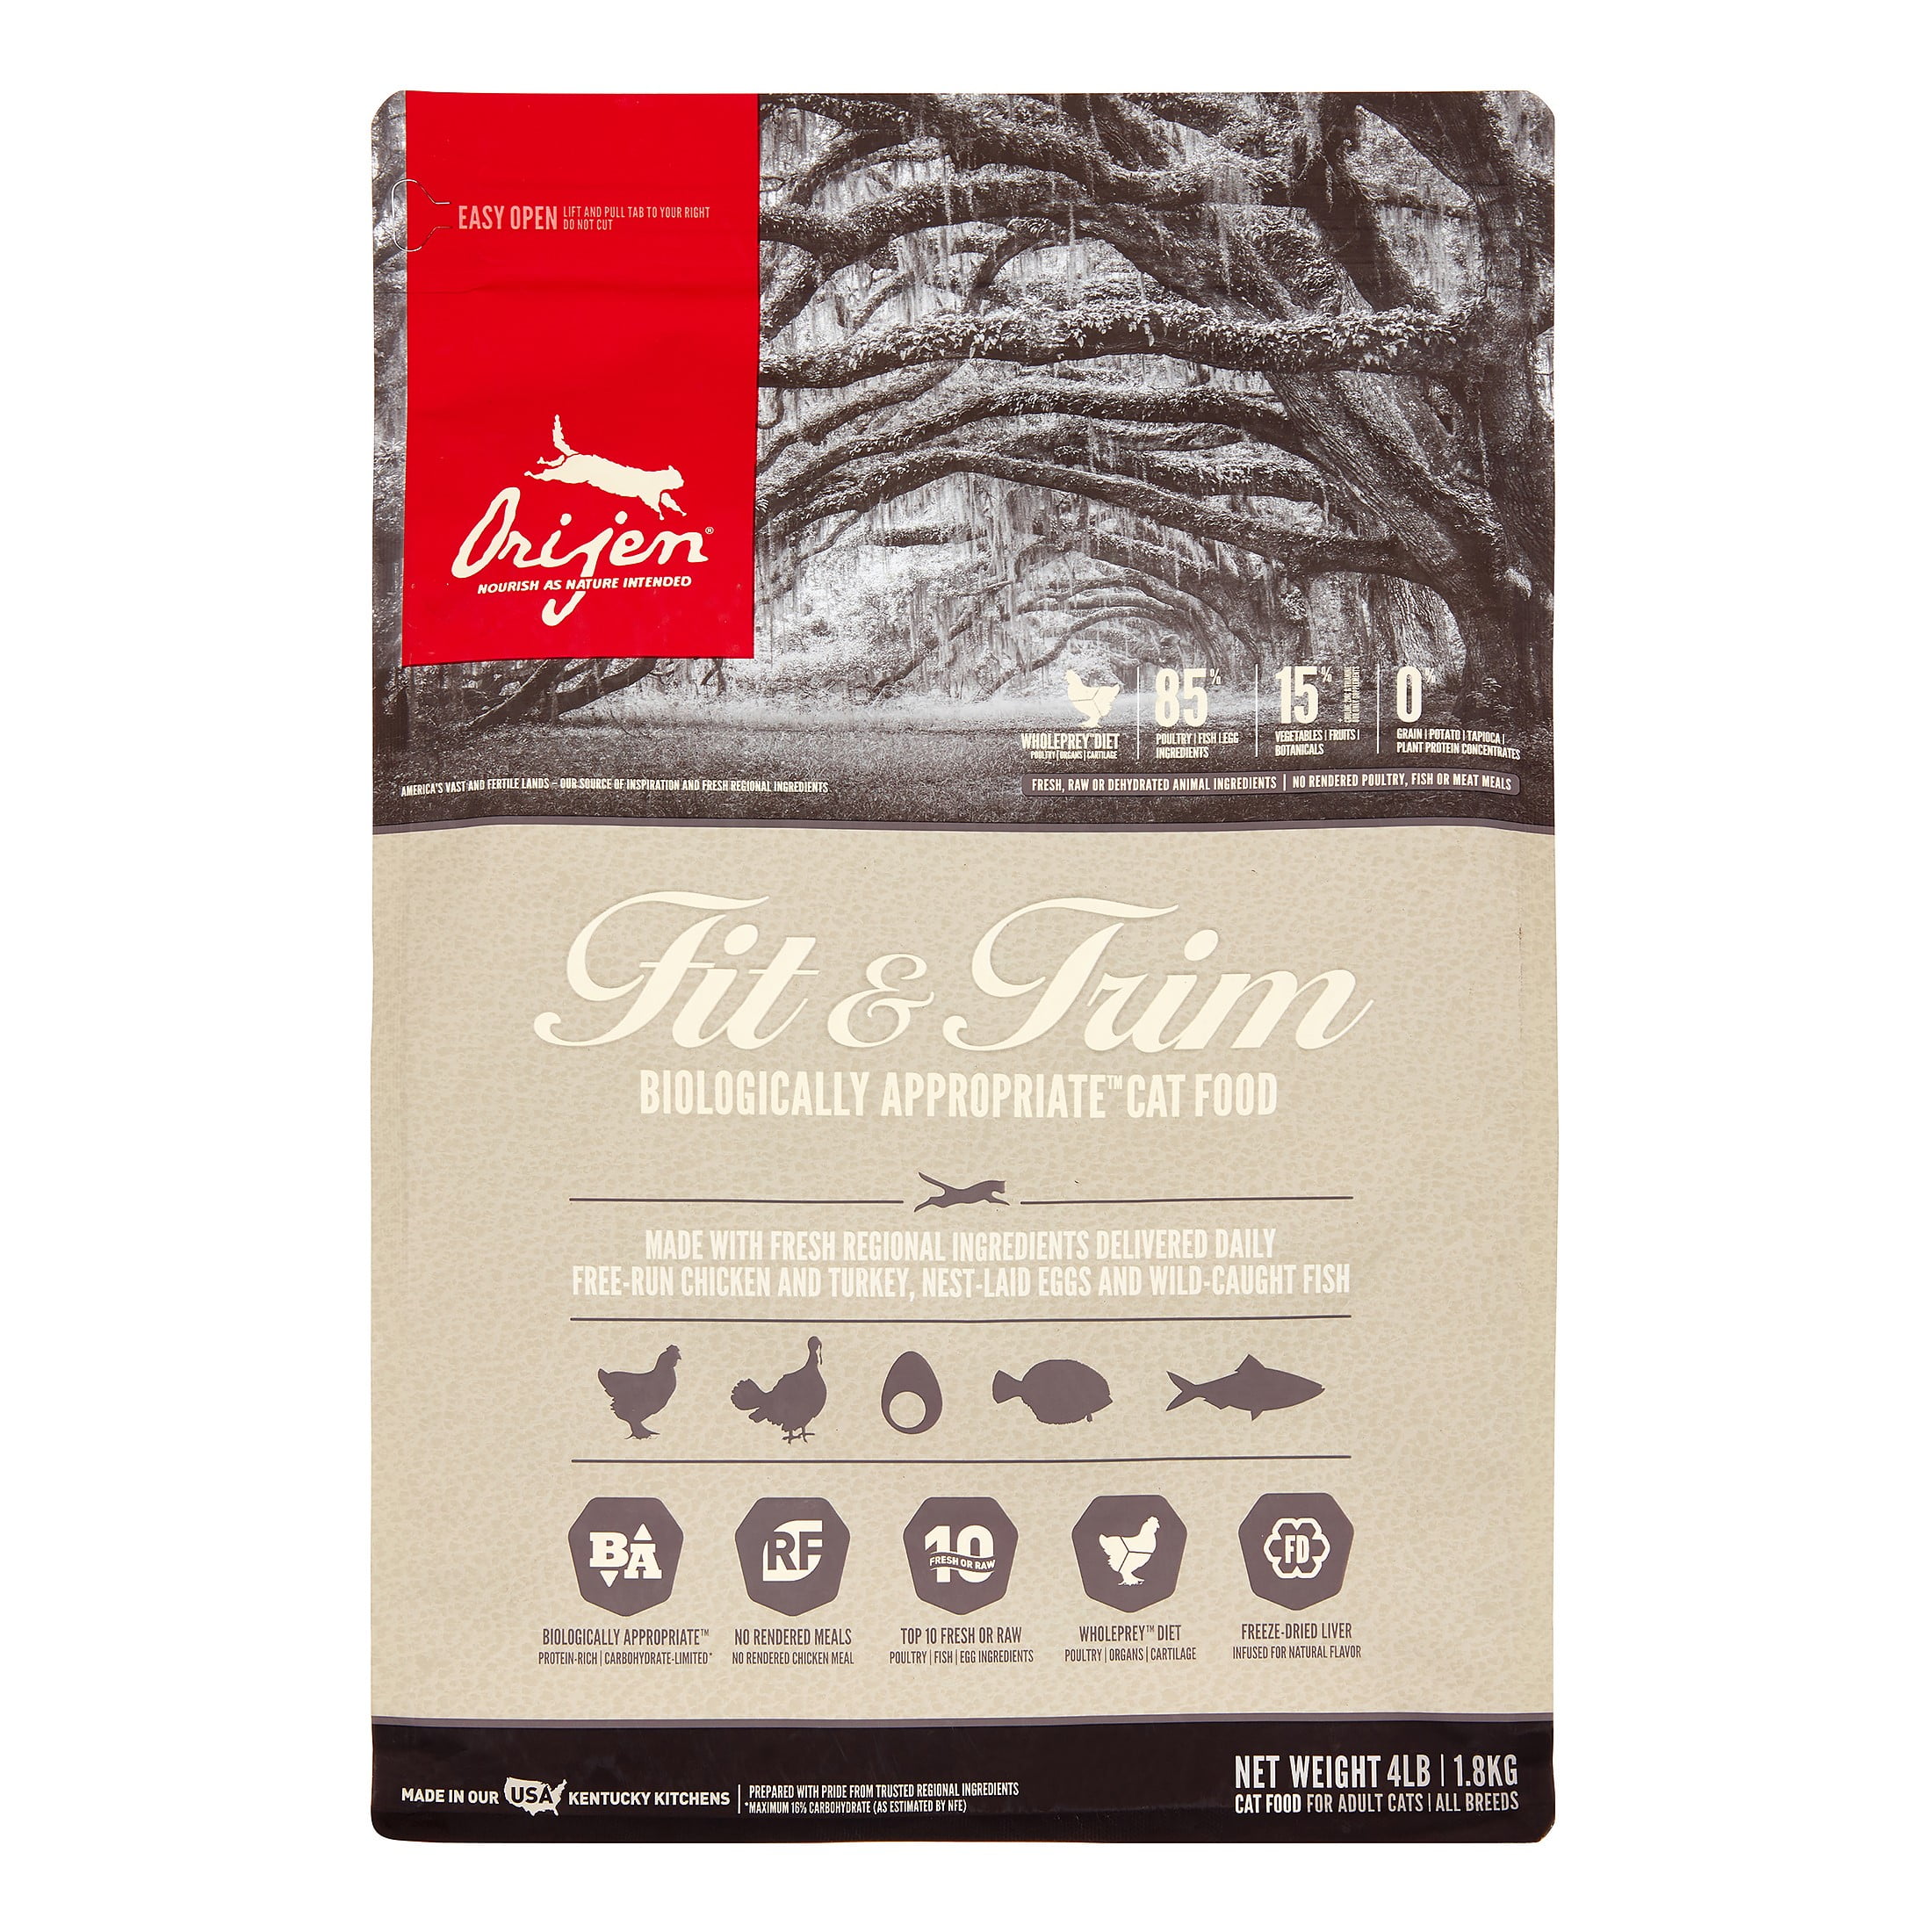 Orijen Fit & Trim Biologically Appropriate GrainFree Dry